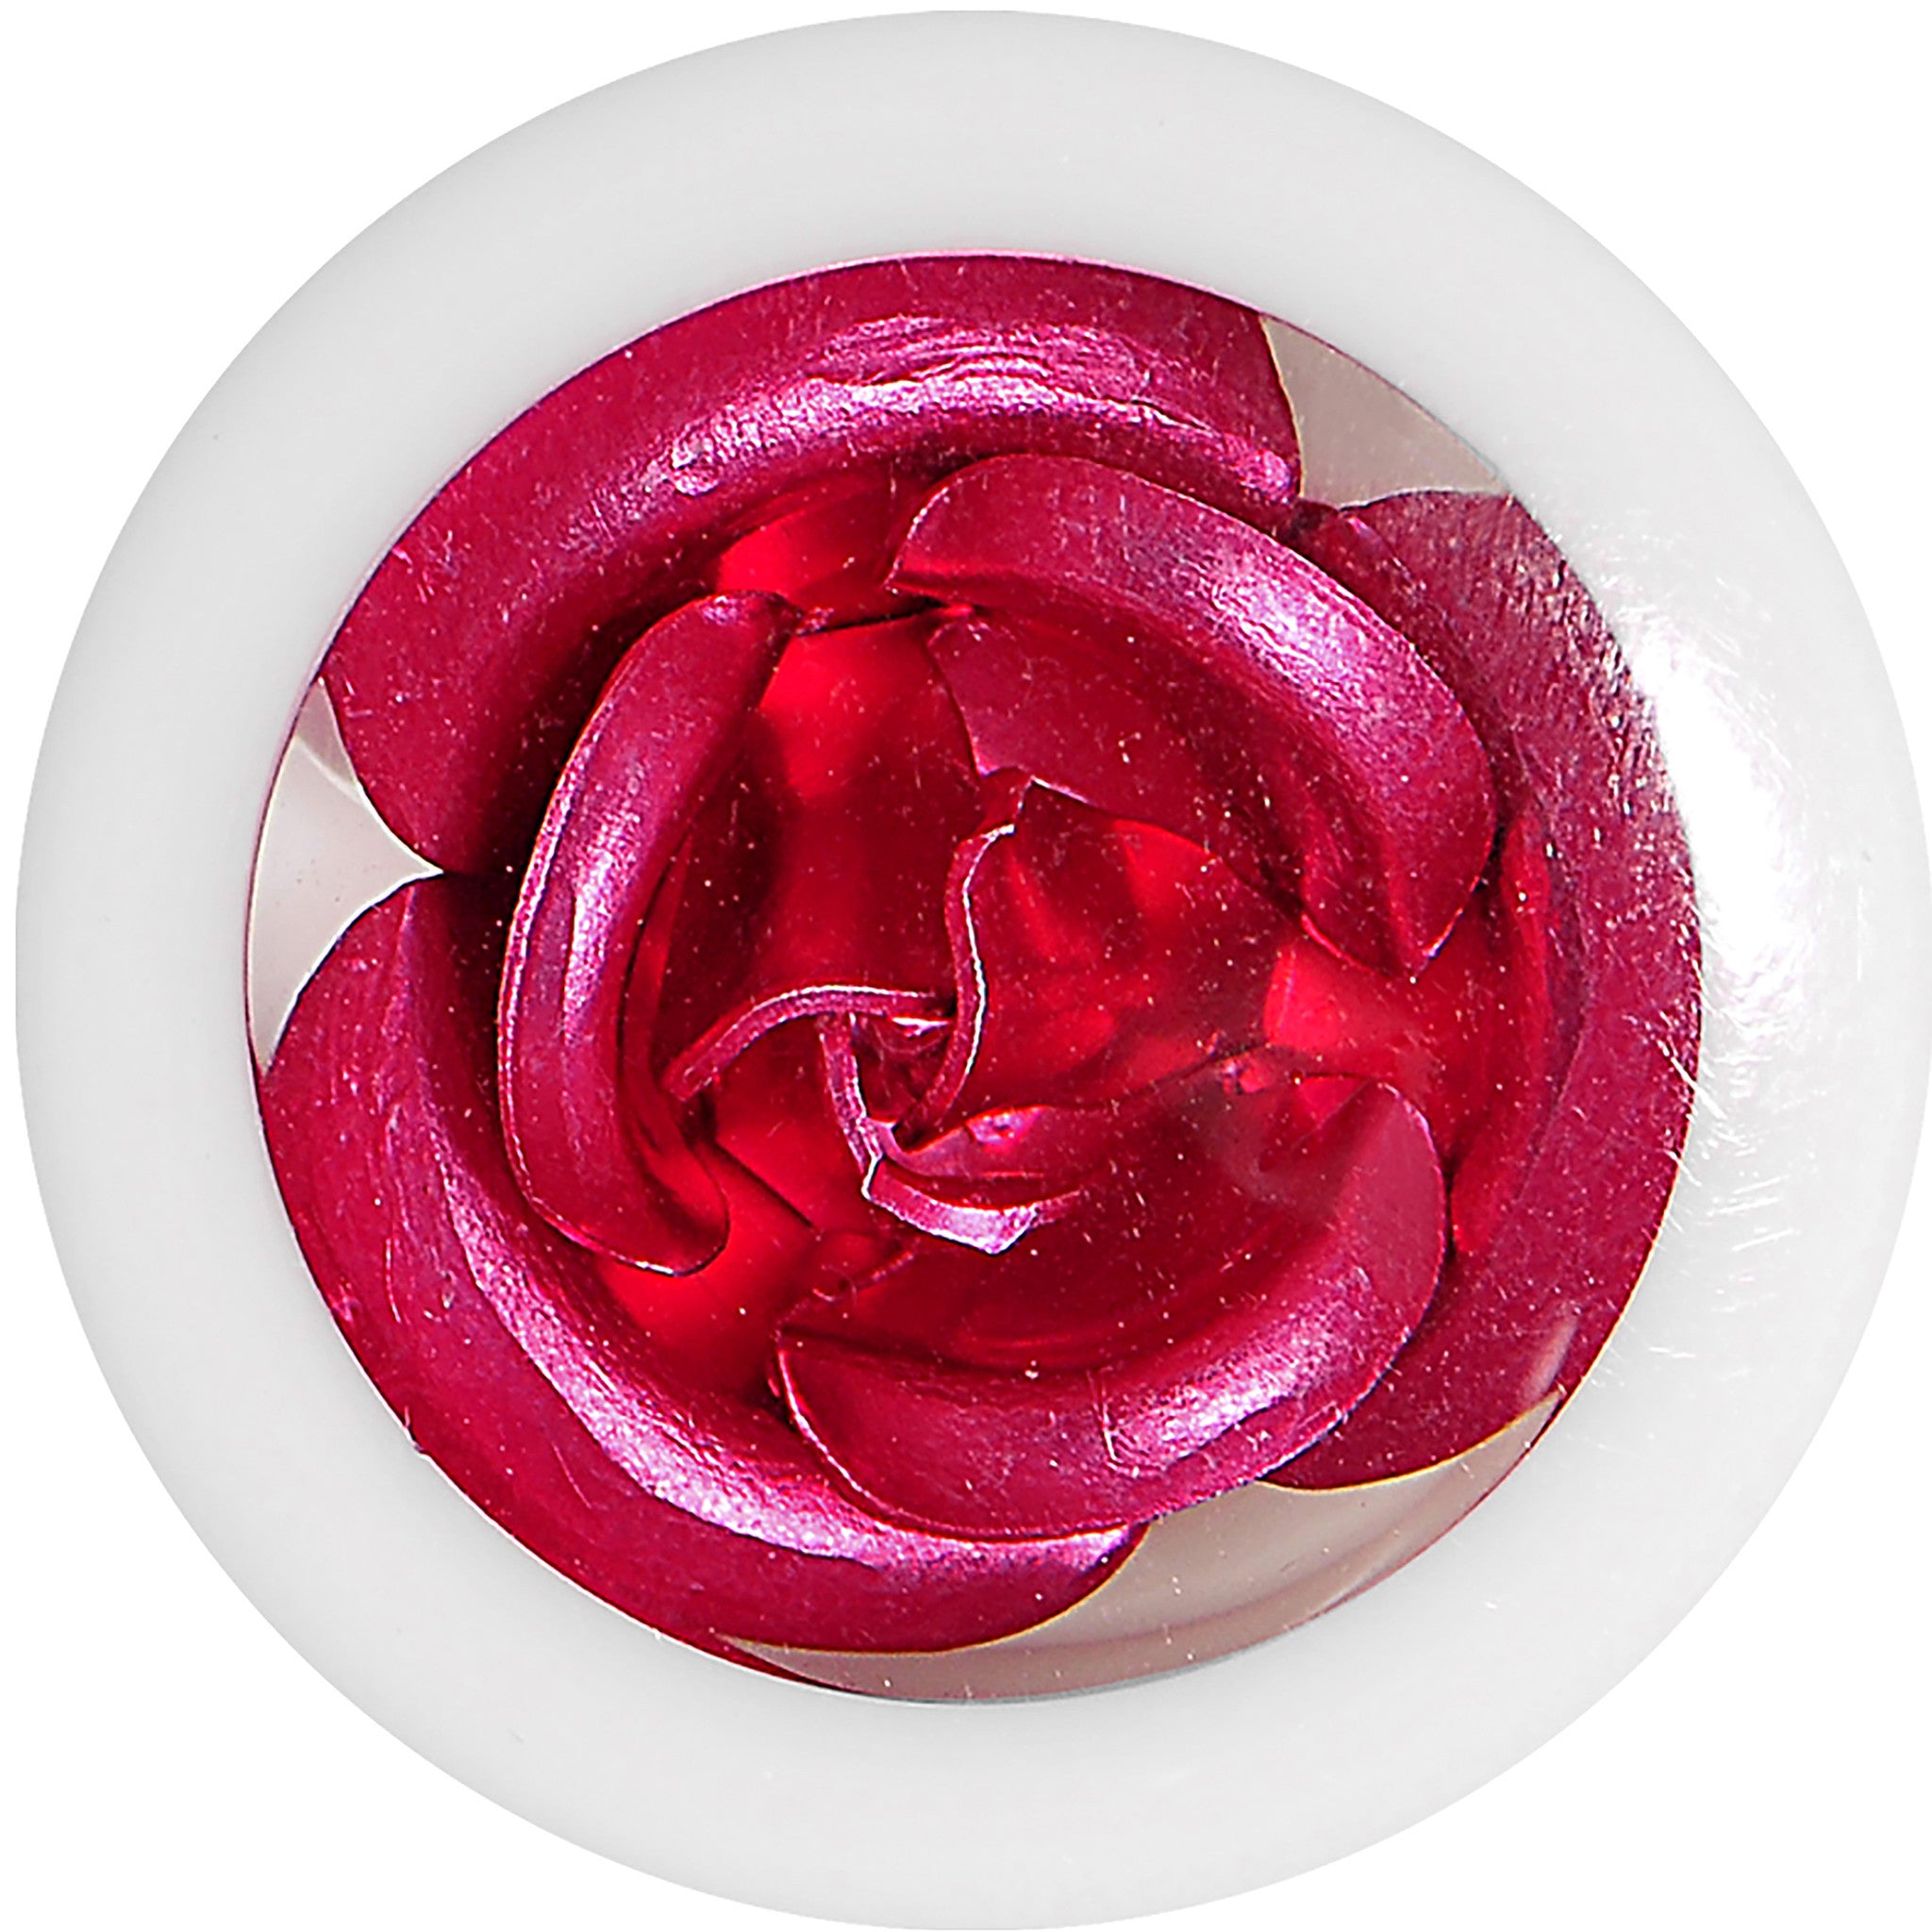 1/2 White Acrylic Pink Metallic Rose Flower Plug